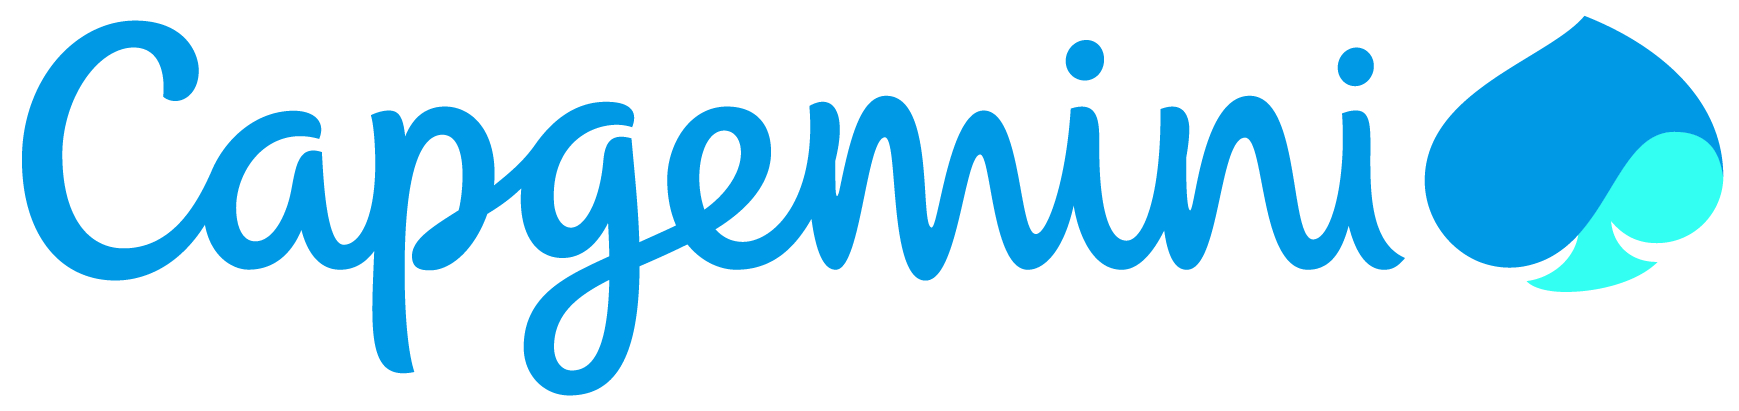 Capgemini logo written in blue cursive script